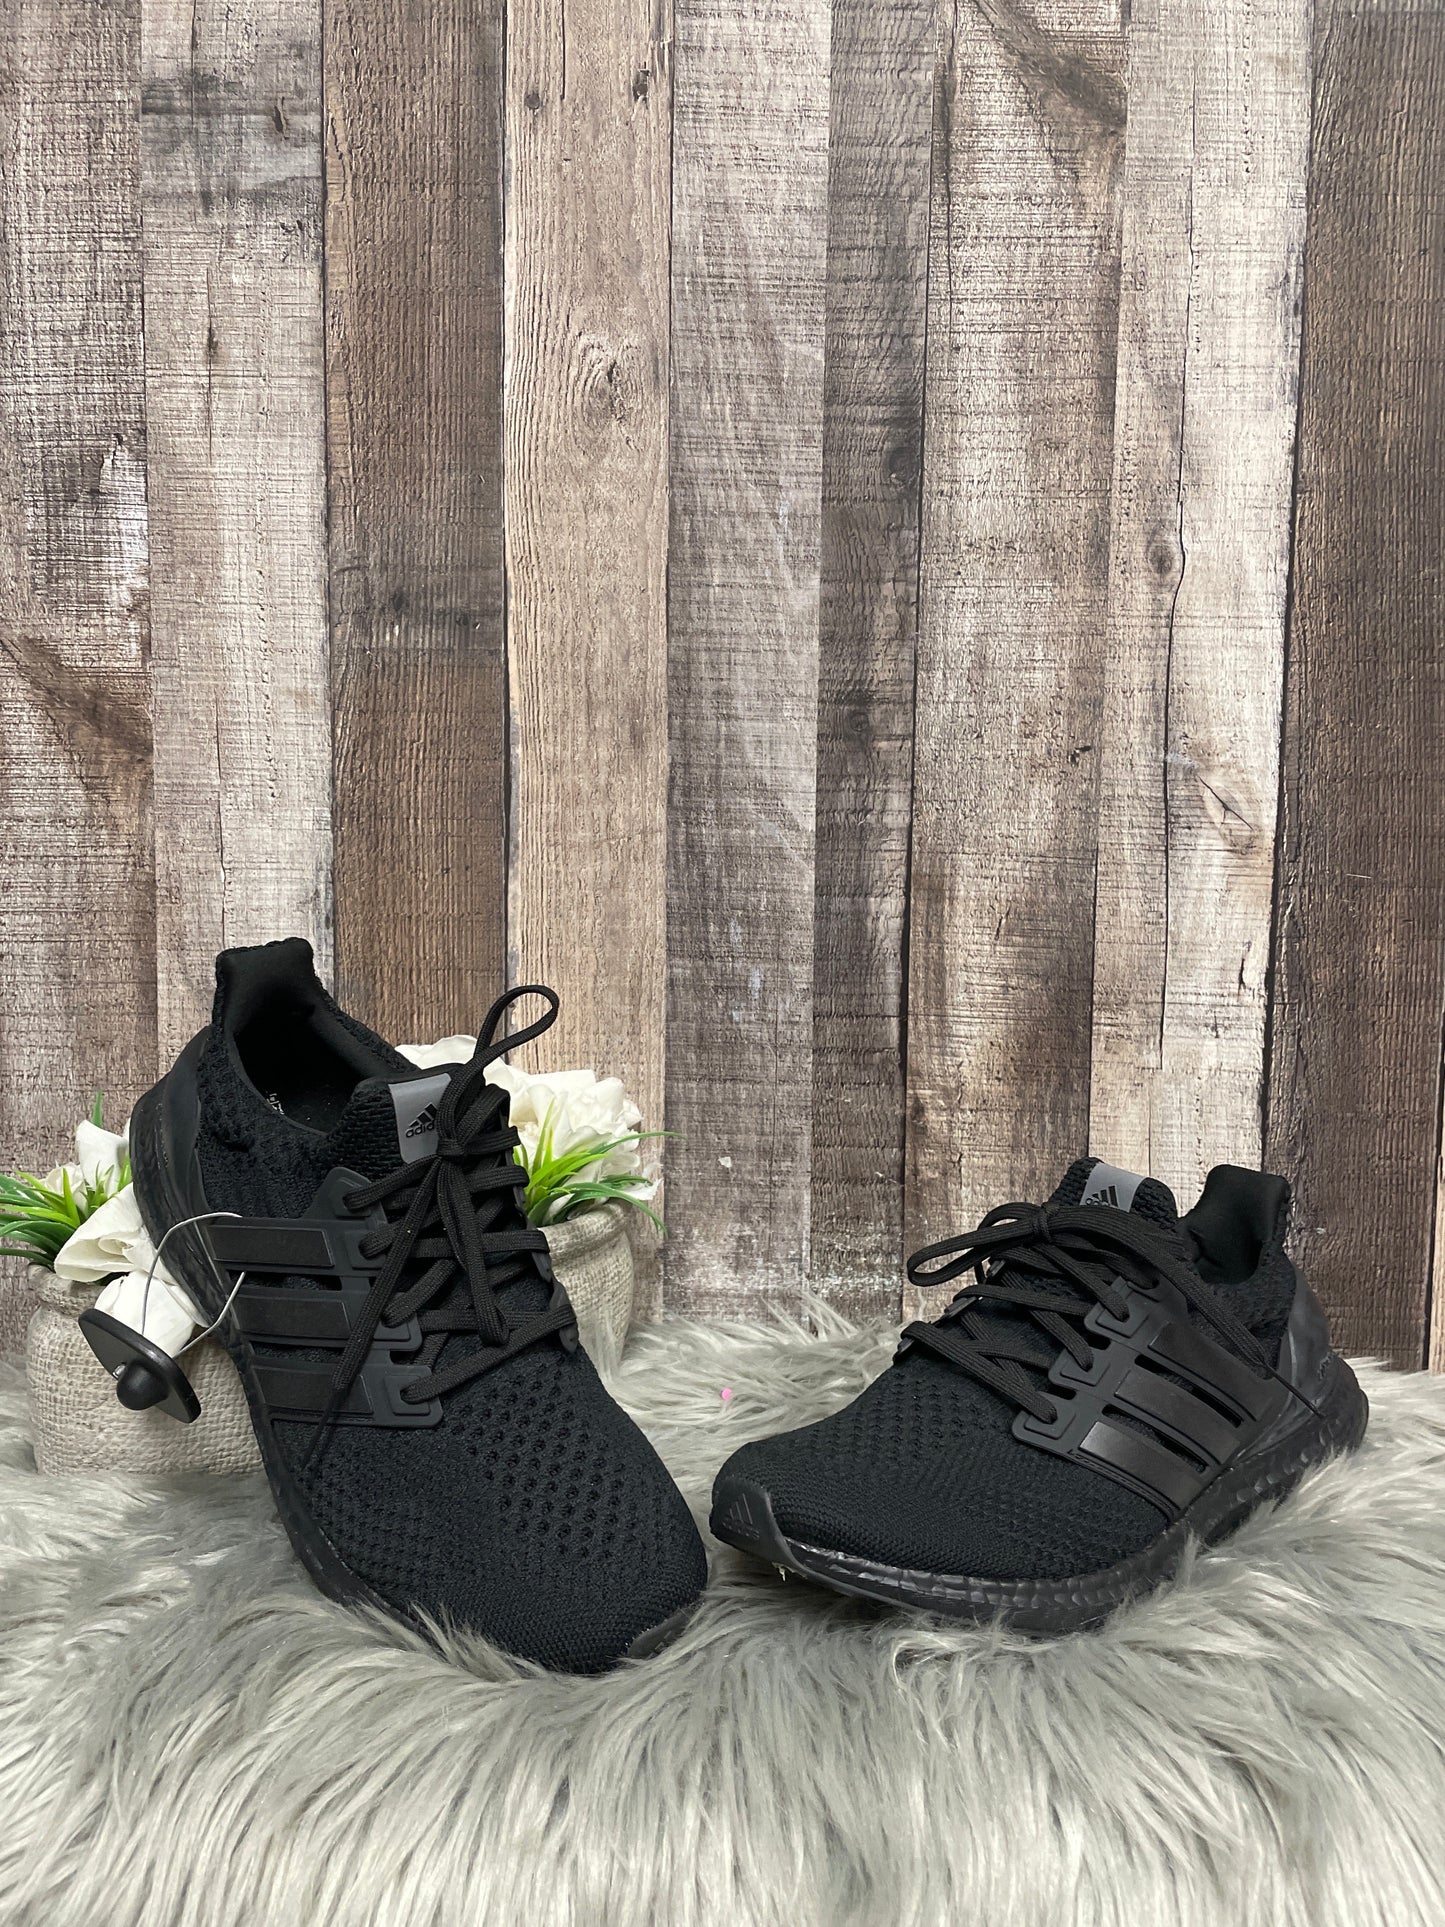 Black Shoes Athletic Adidas, Size 10.5